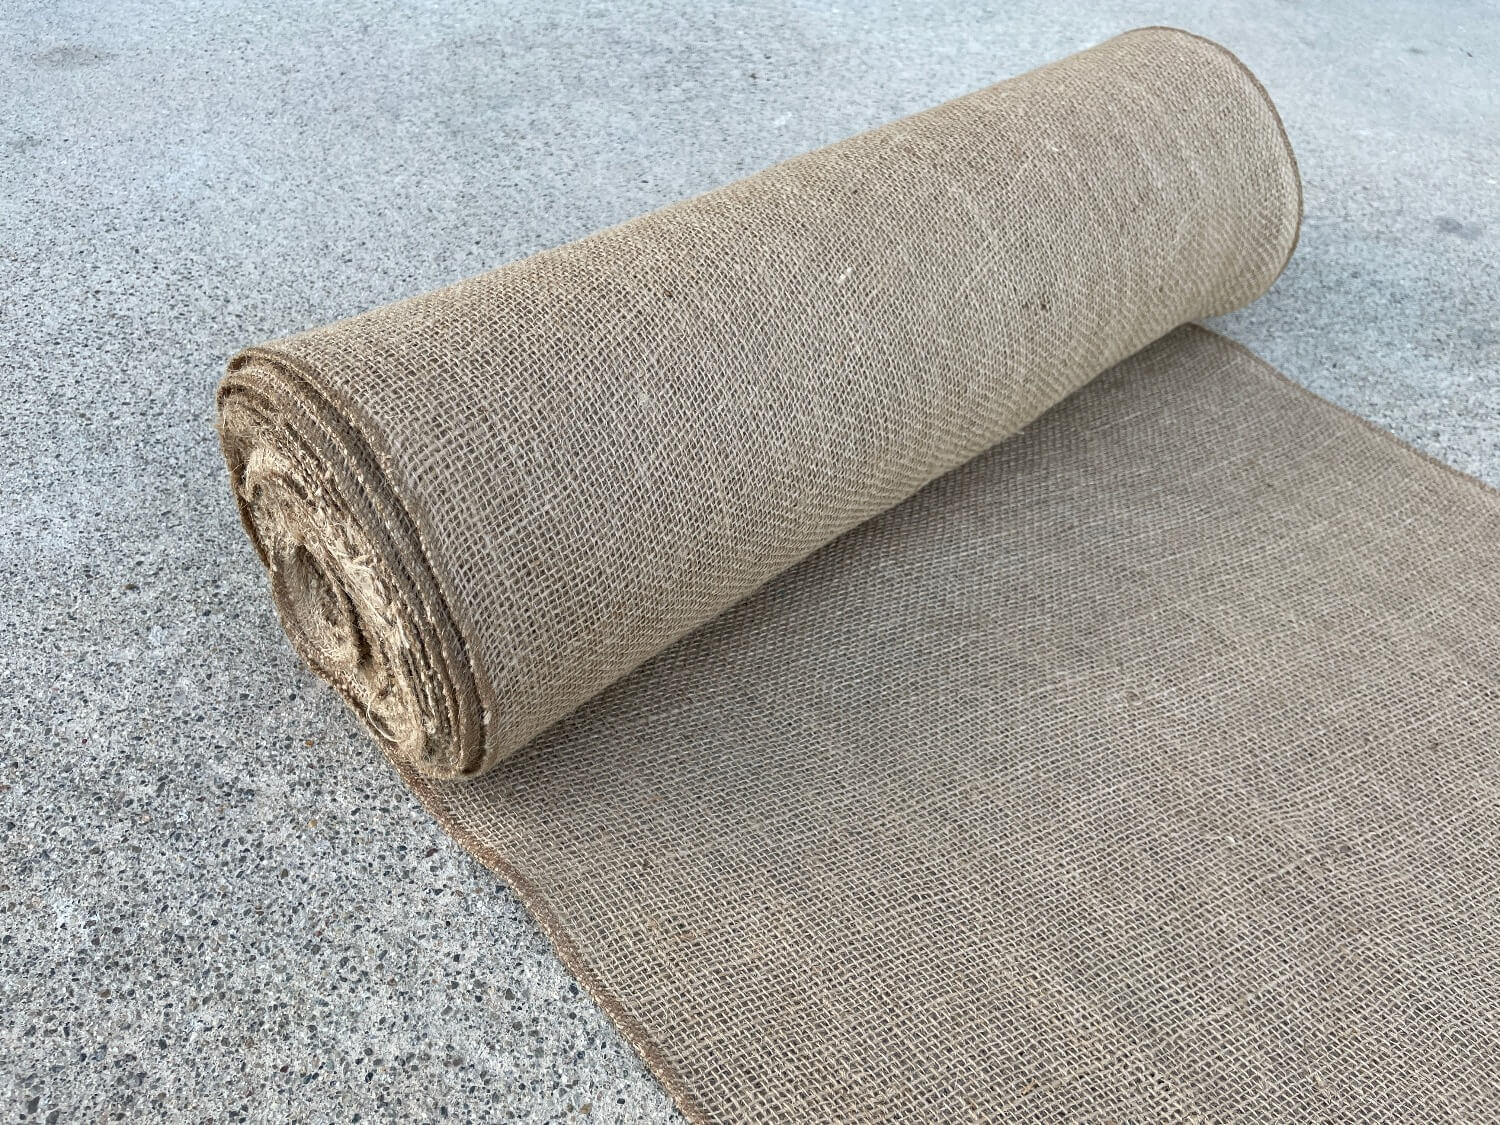 Woolsacks Burlap Fabric by The Yard | 40 Wide x 5 Yard Long | Natural Jute  Burlap Fabric 5 Yards